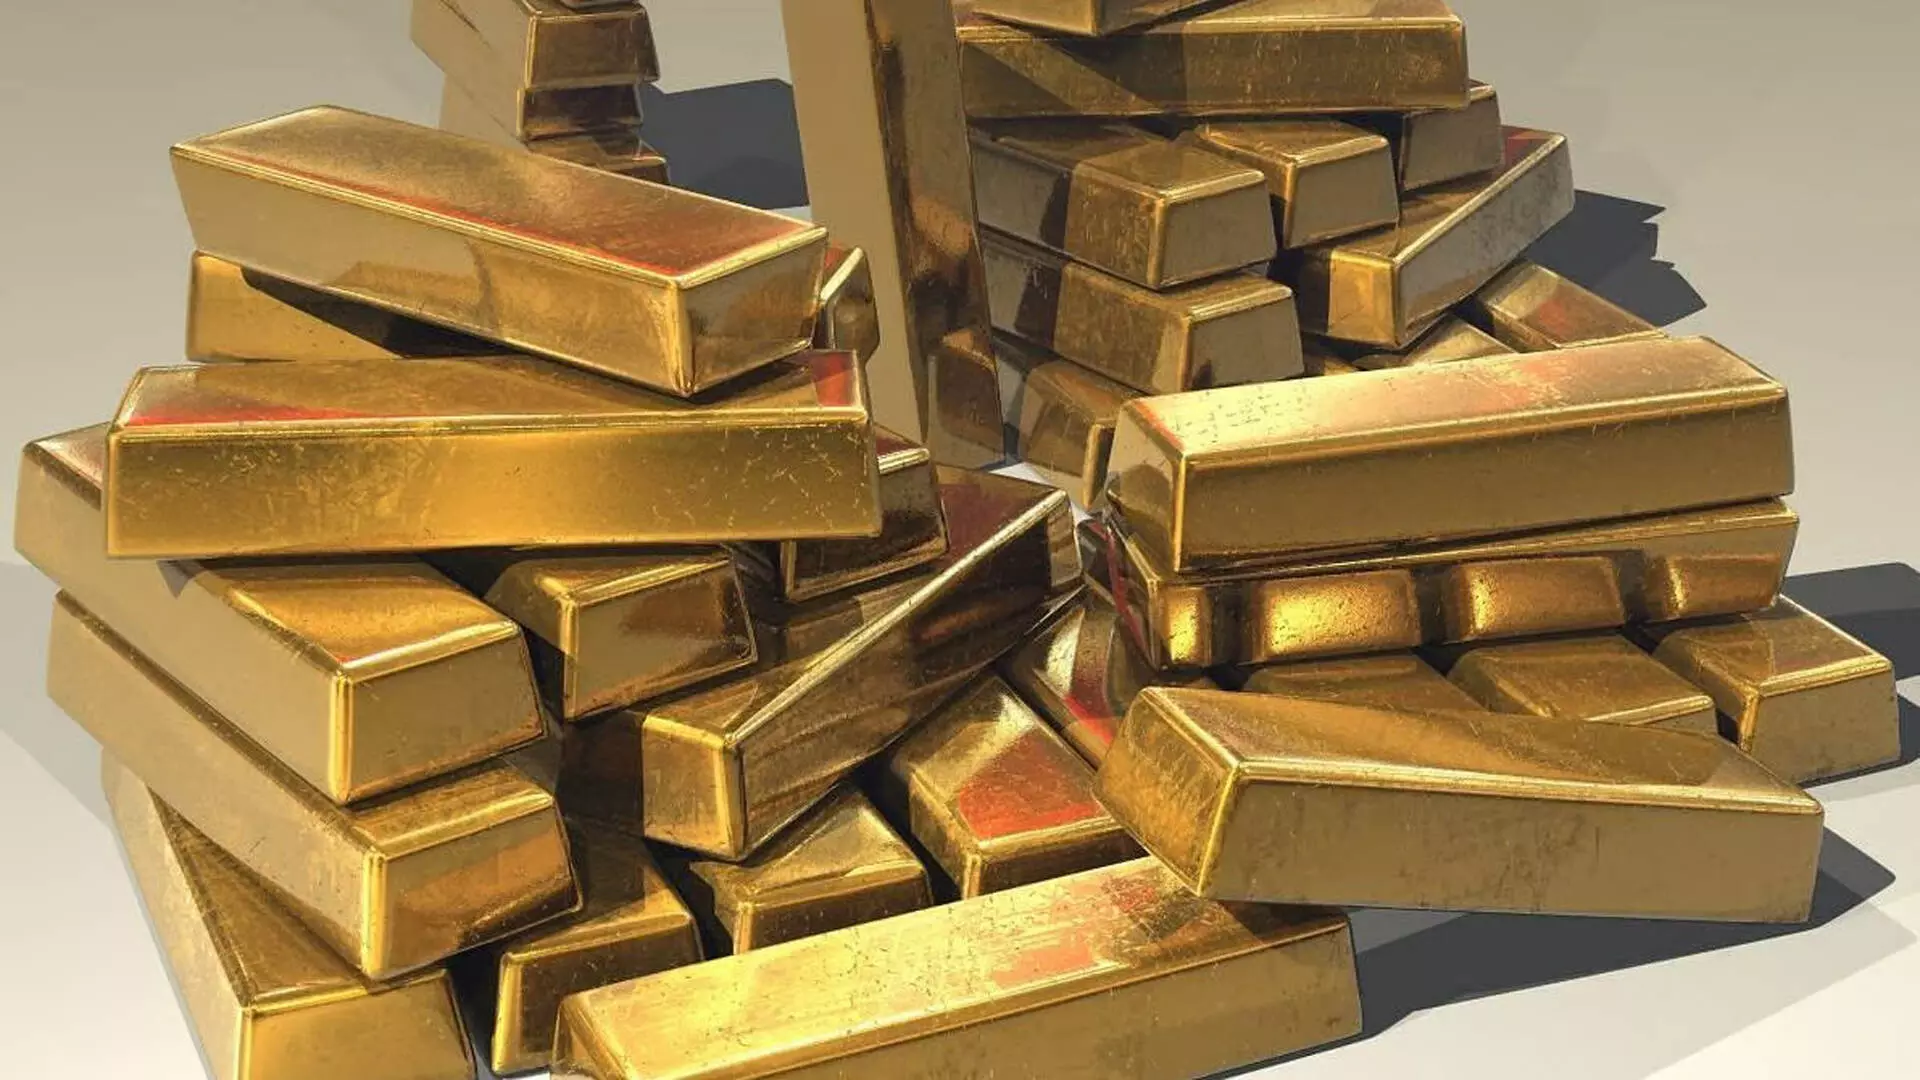 हवाई अड्डे पर यात्रियों के मलाशय में छुपाया गया 5.5 किलो सोना जब्त